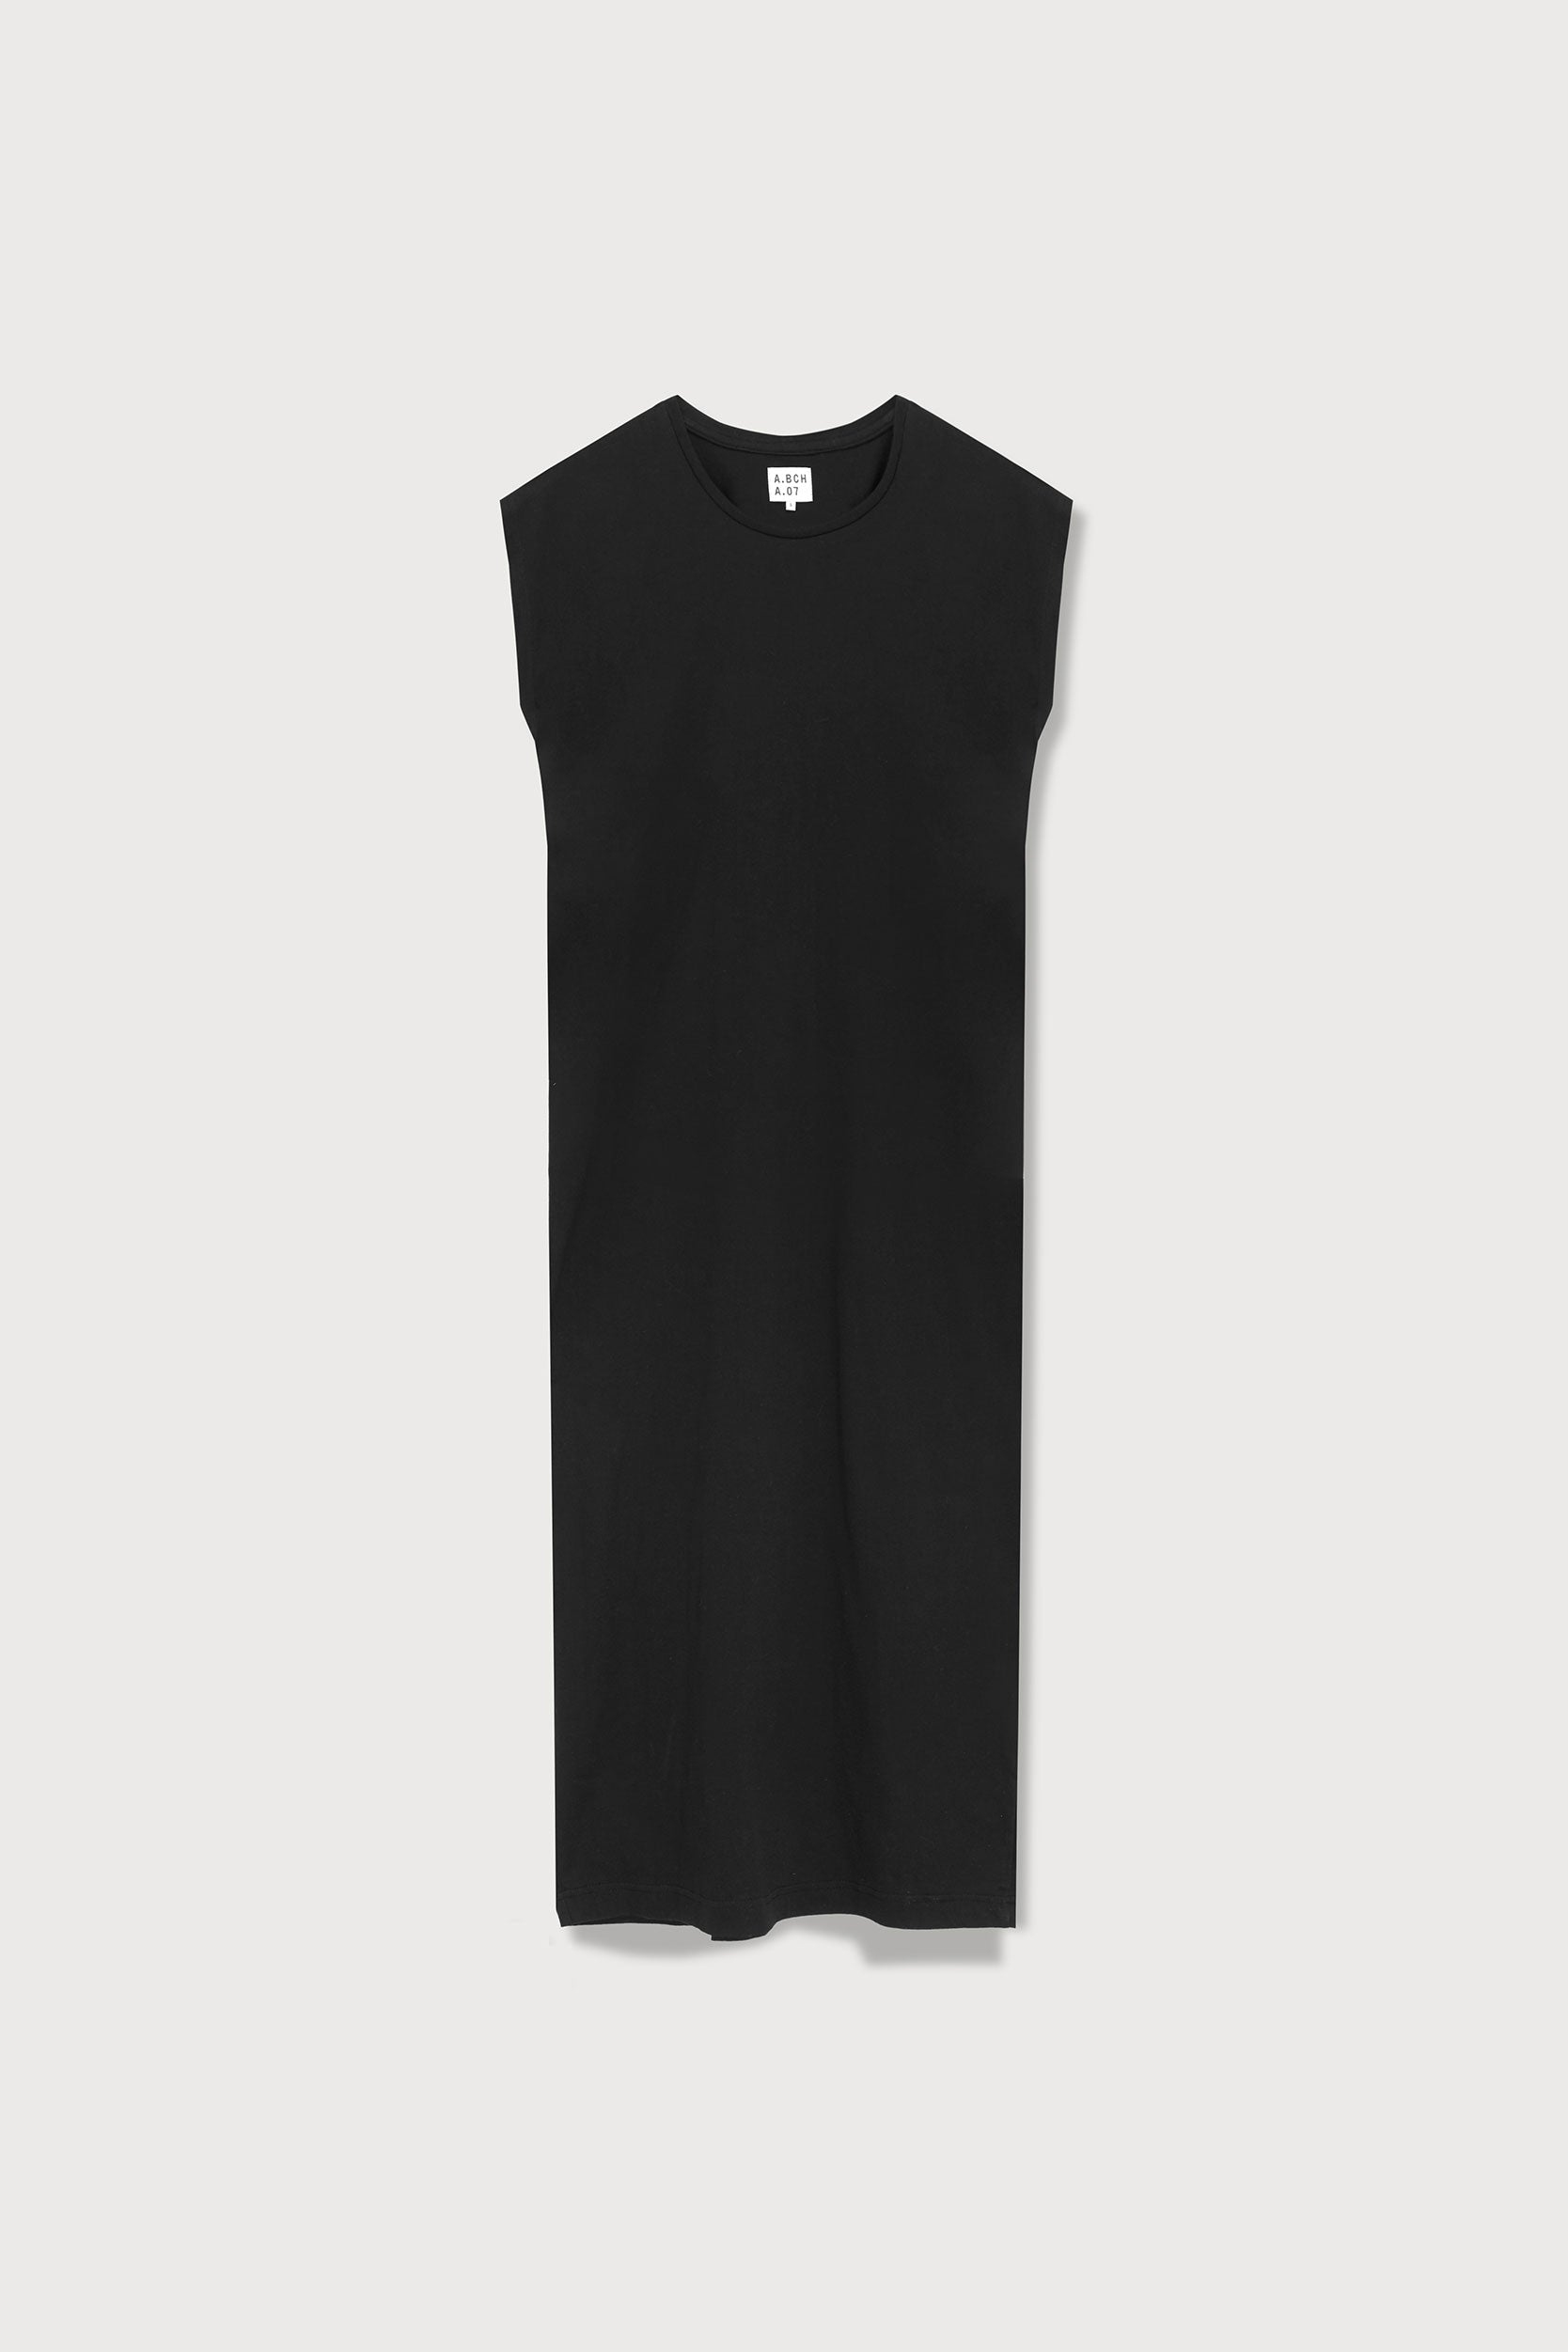 A.07 Black Organic Cotton T Shirt Dress | A.BCH